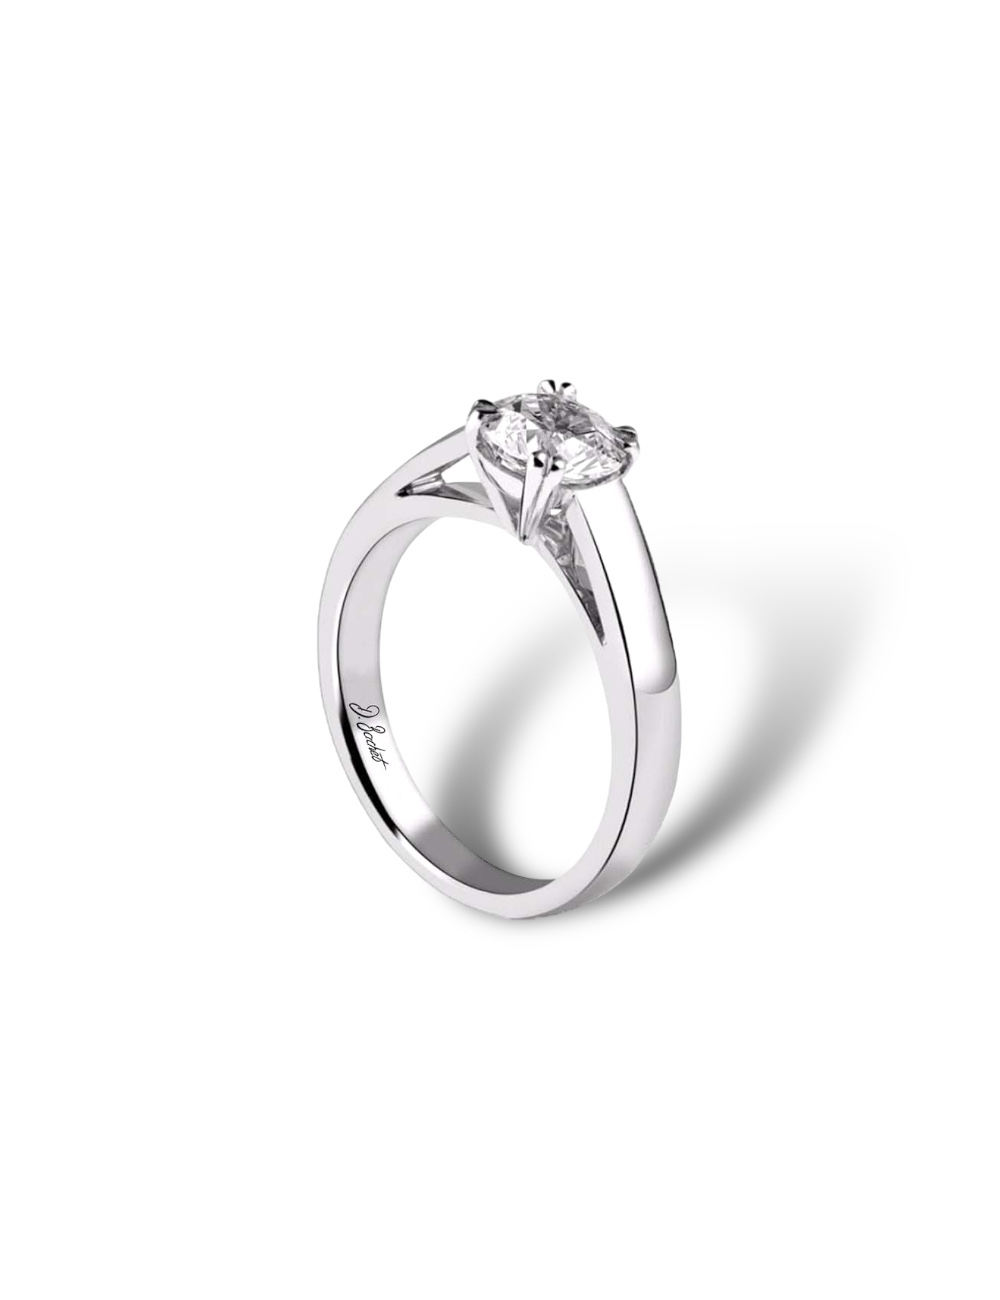 Bague de fiançailles solitaire D.Bachet en platine : diamant blanc 0.50 carat, monture épurée et contemporaine, serti éthique.